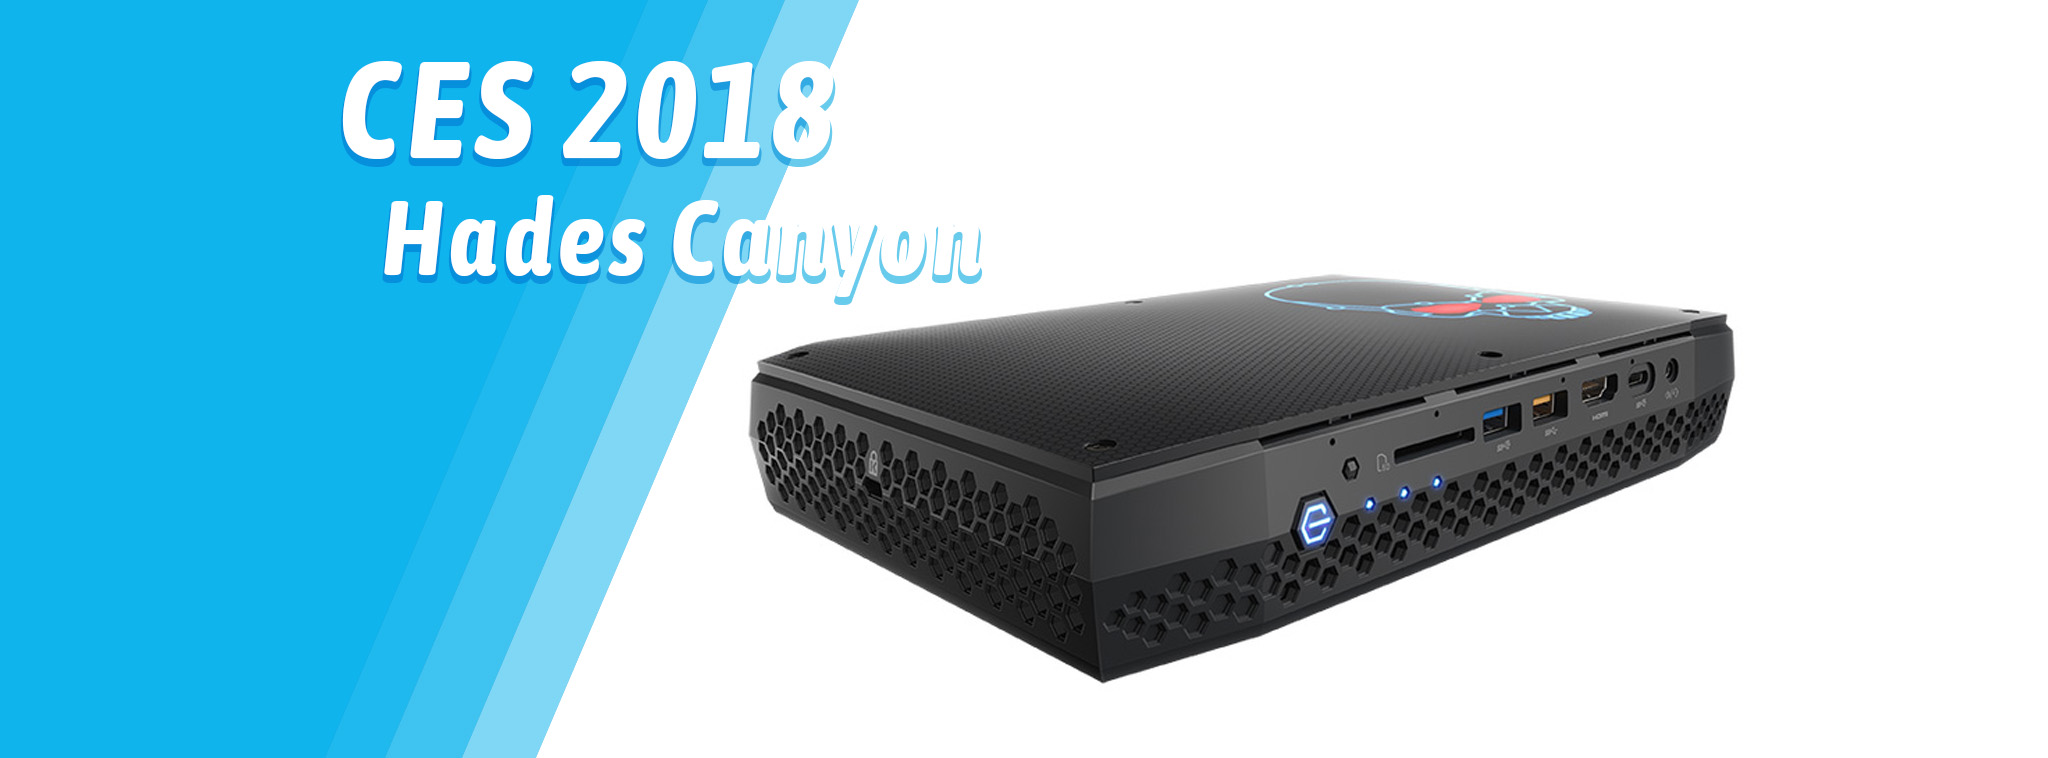 [CES18] Intel ra mắt Hades Canyon: NUC mới, chip đồ họa Radeon RX Vega M, giá 799 - 999 USD